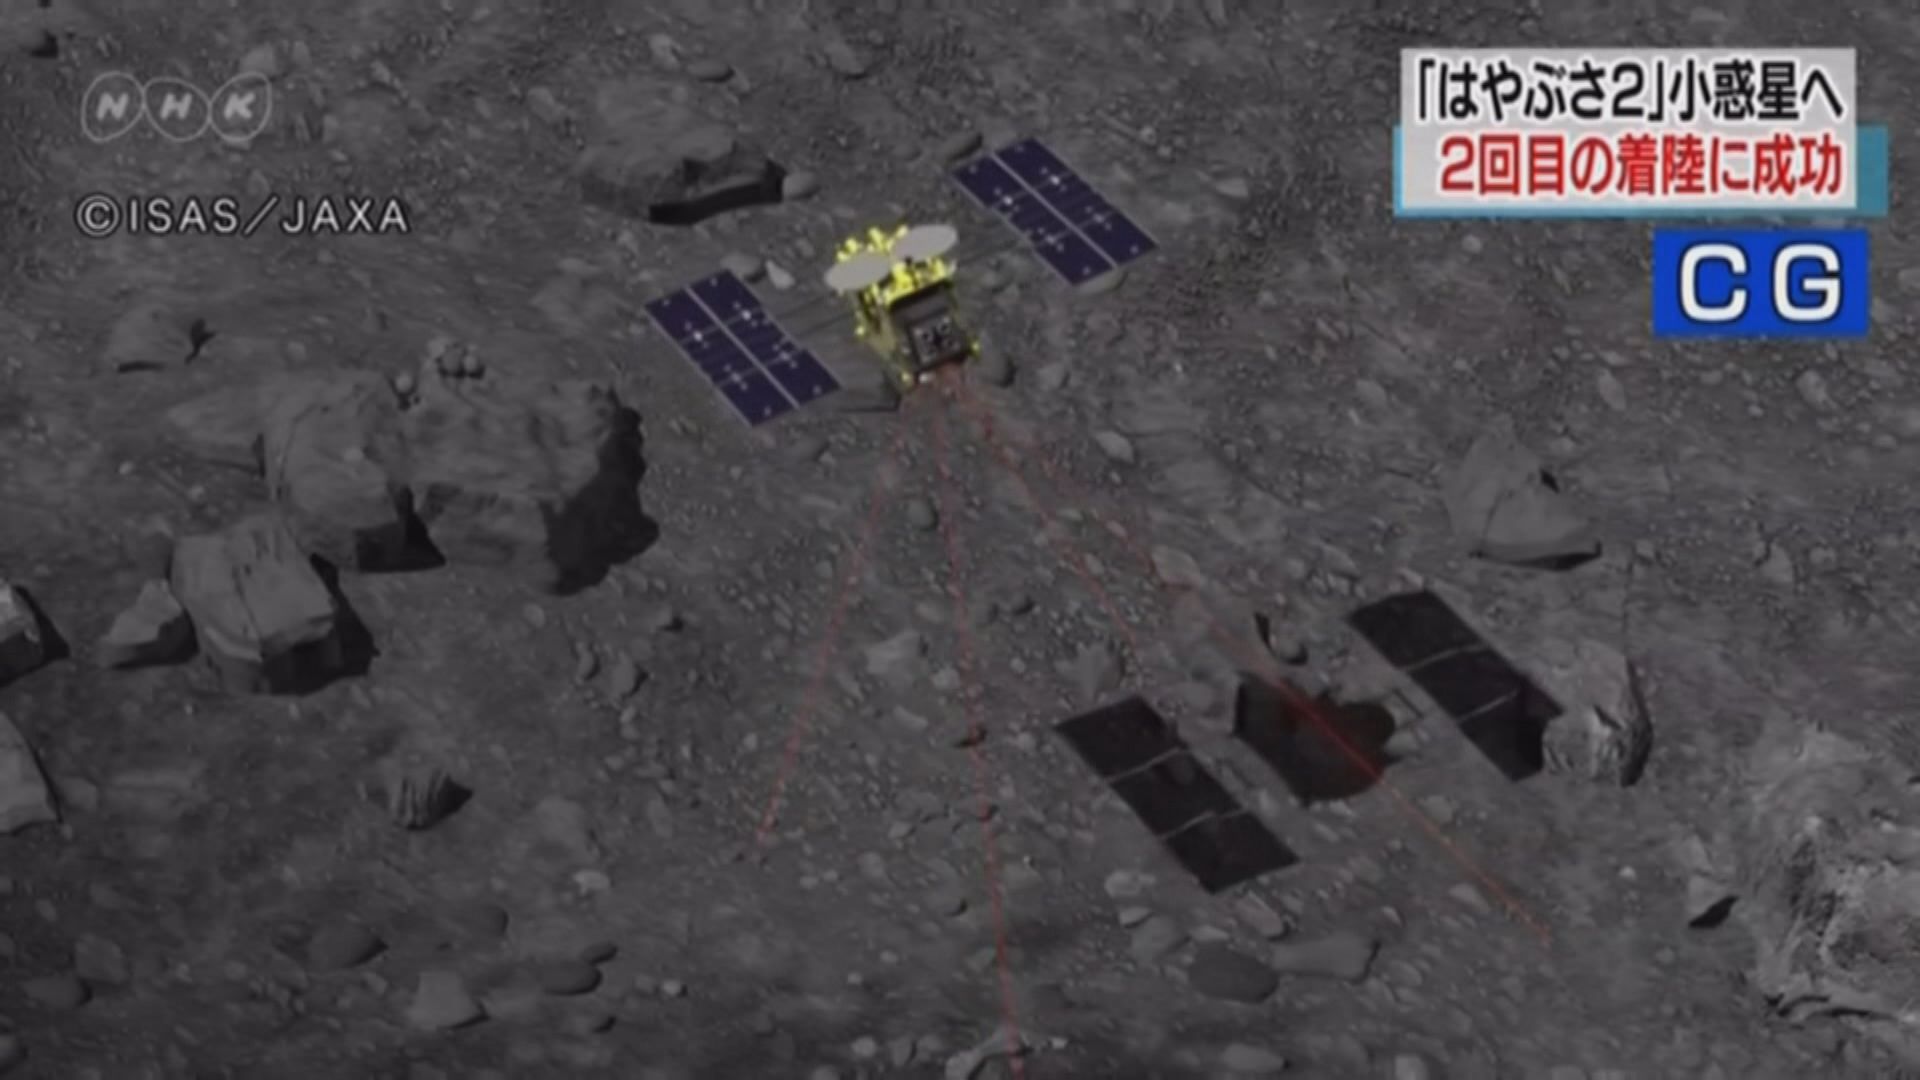 隼鳥二號全球首次採集小行星地下物質